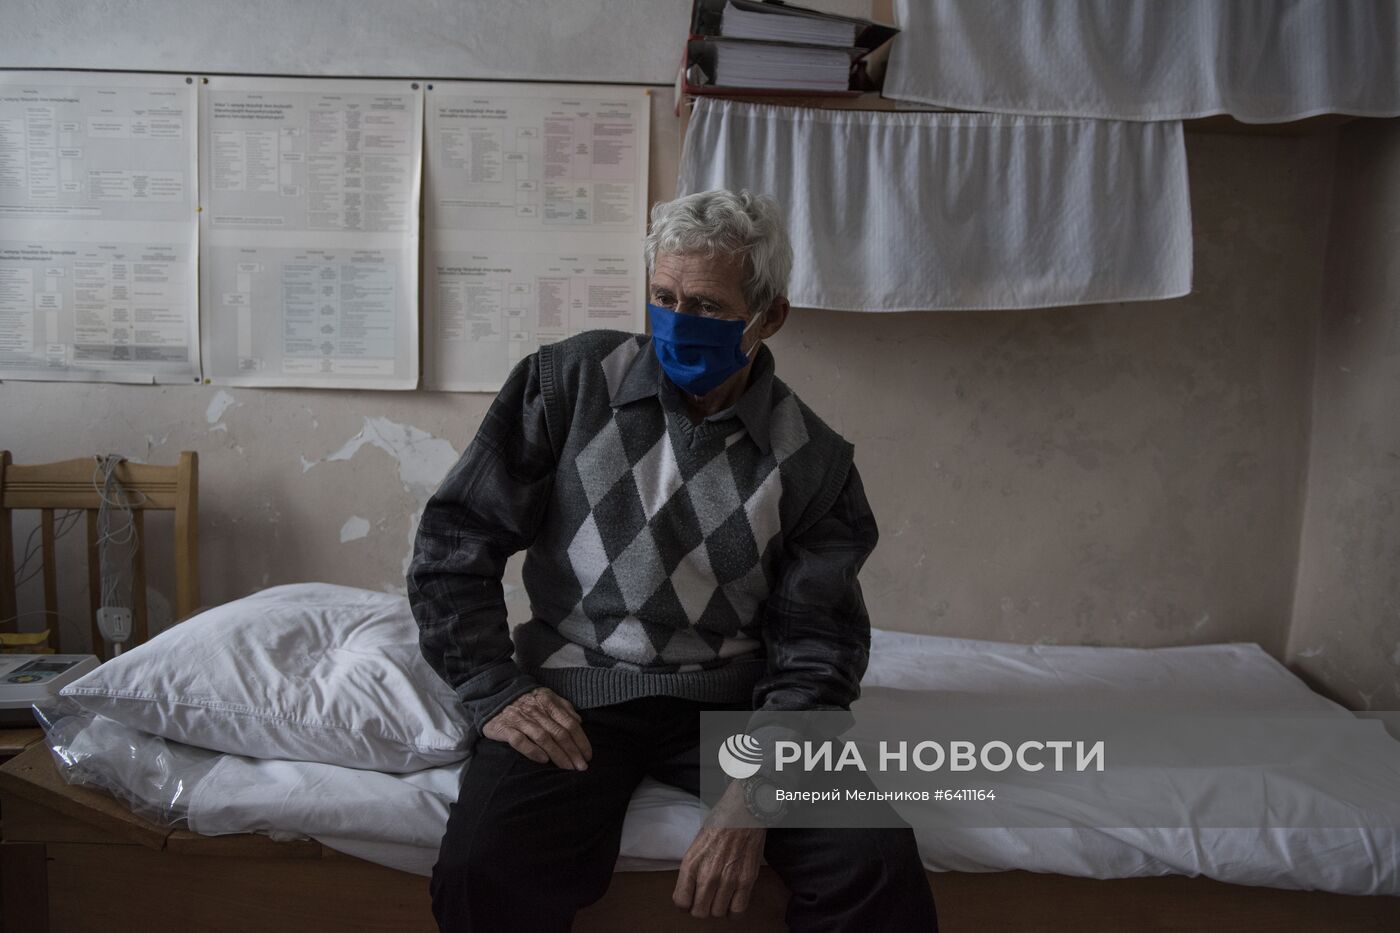 Прием пациентов медицинским отрядом Минобороны РФ в селе Айгестан